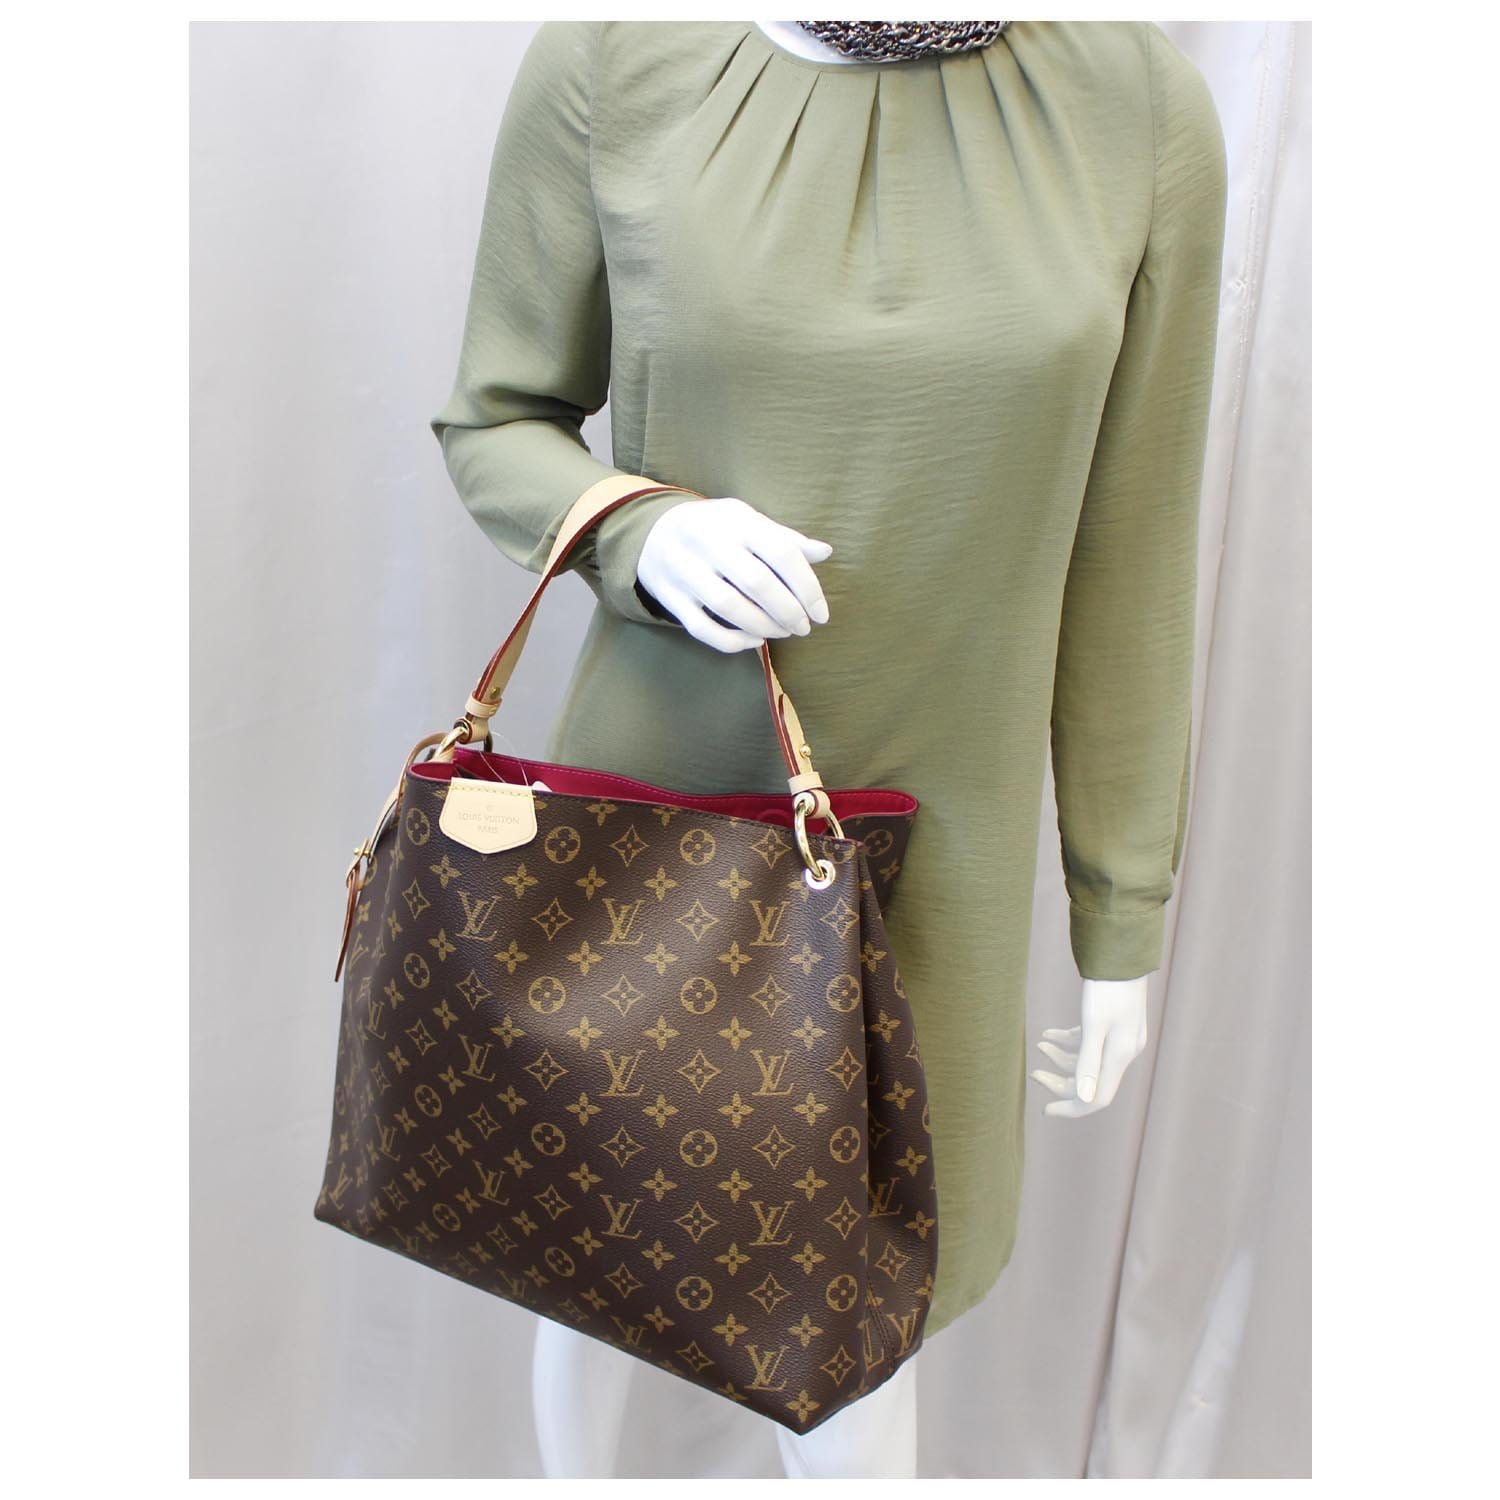 Handbags Louis Vuitton LV Graceful PM Mono